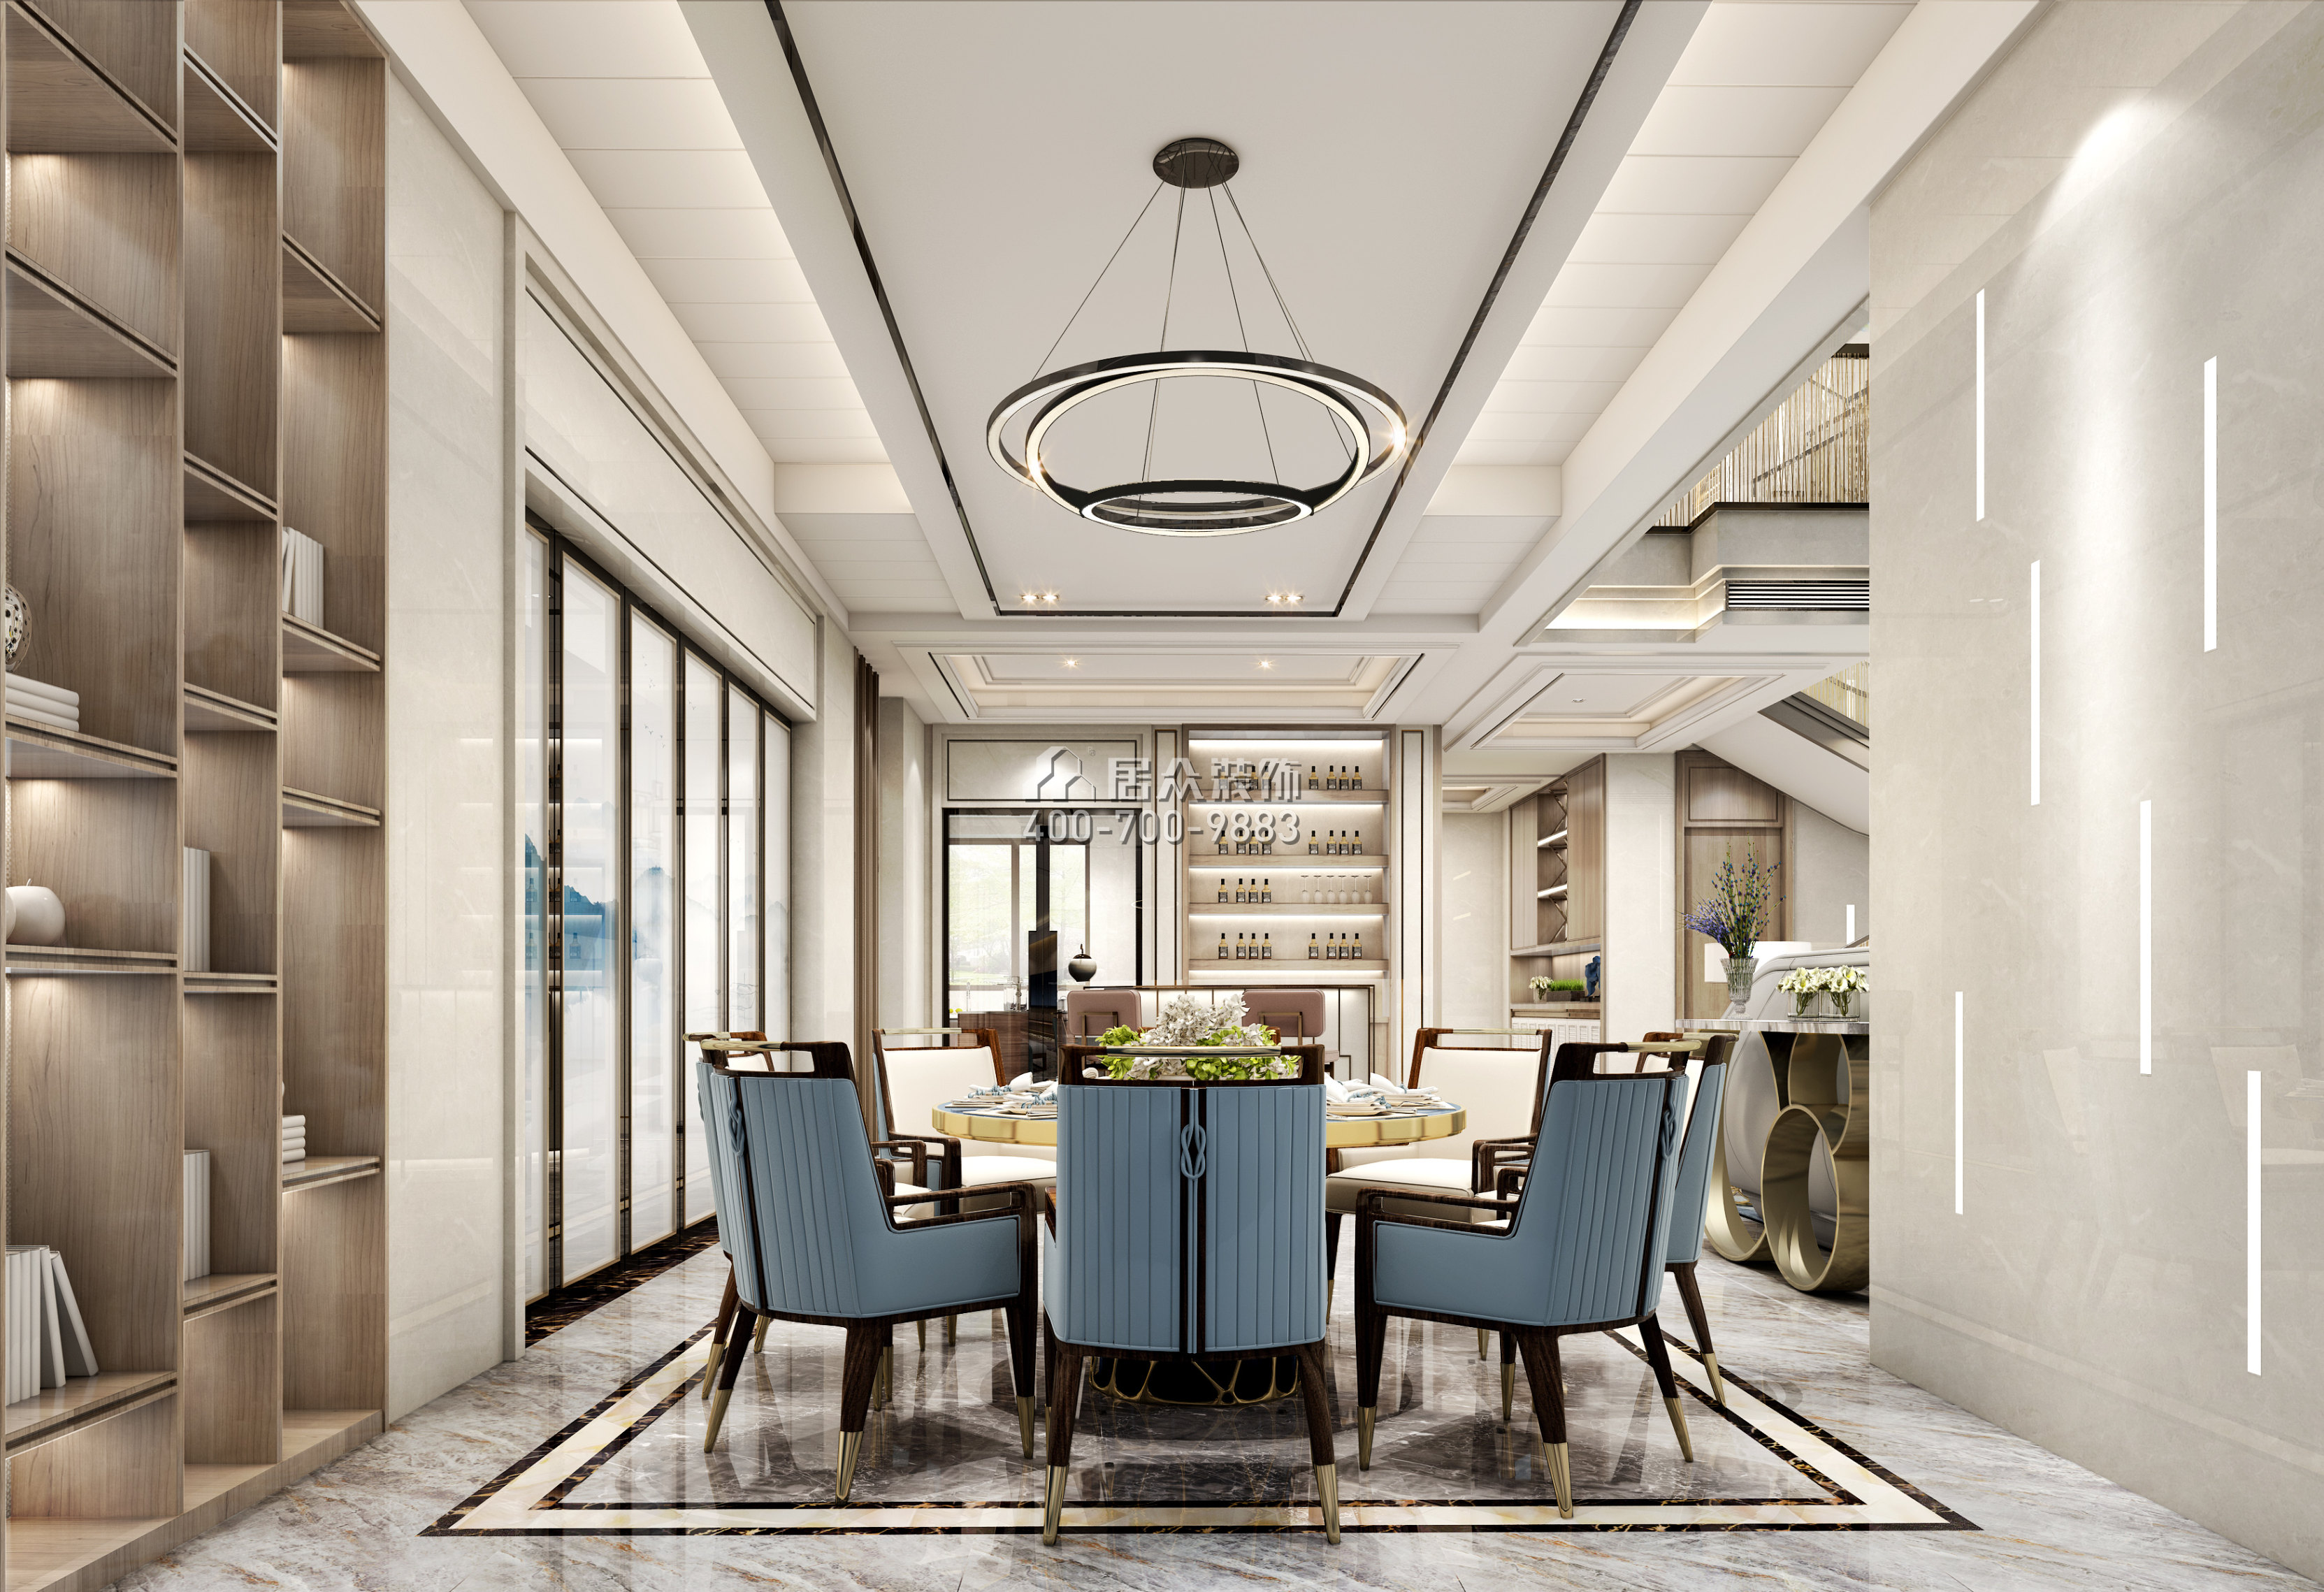 海逸豪庭326平方米混搭風格別墅戶型餐廳裝修效果圖